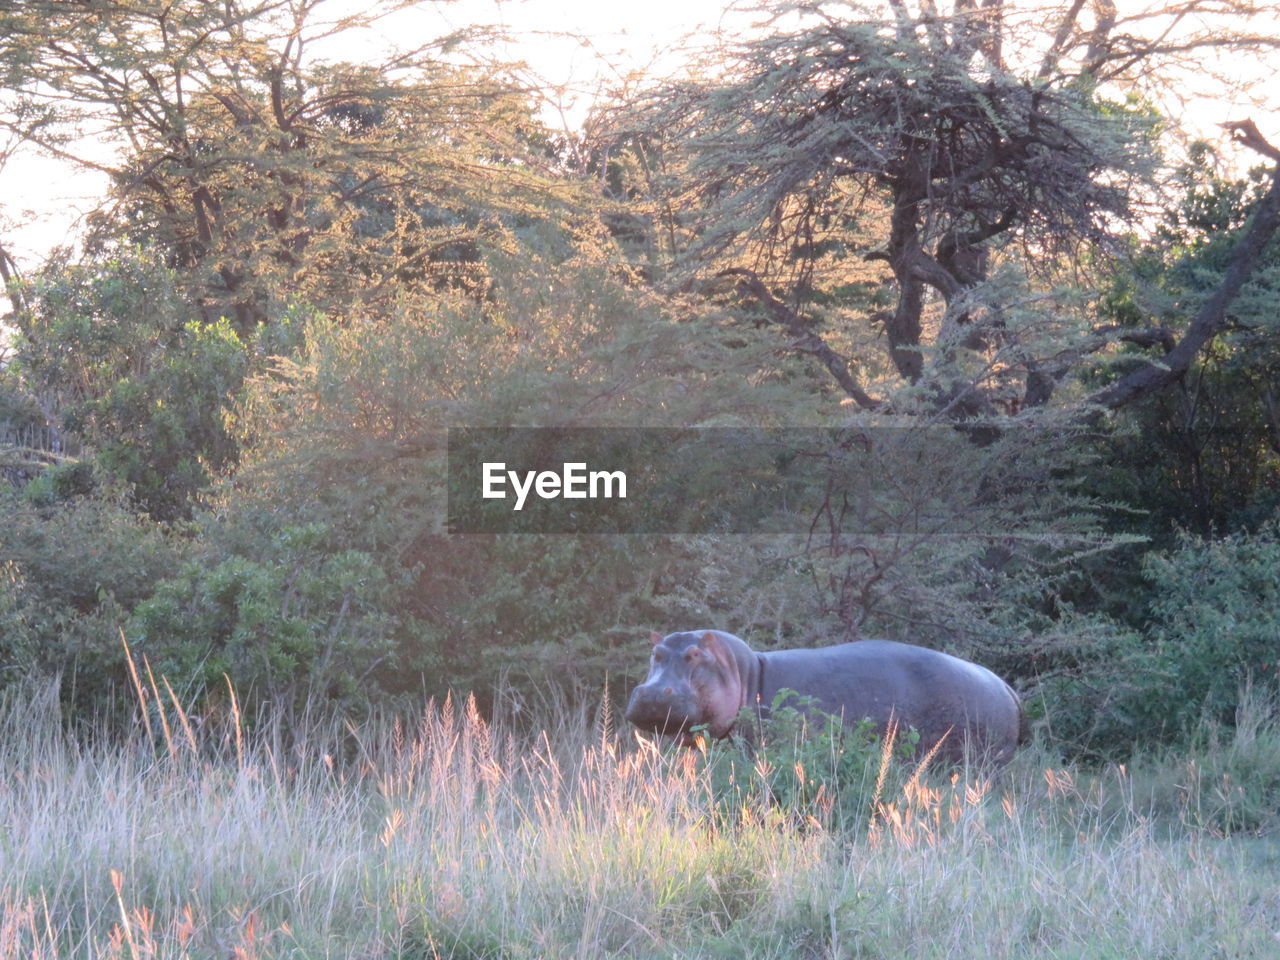 Hippopotamus standing amidst plants in grass